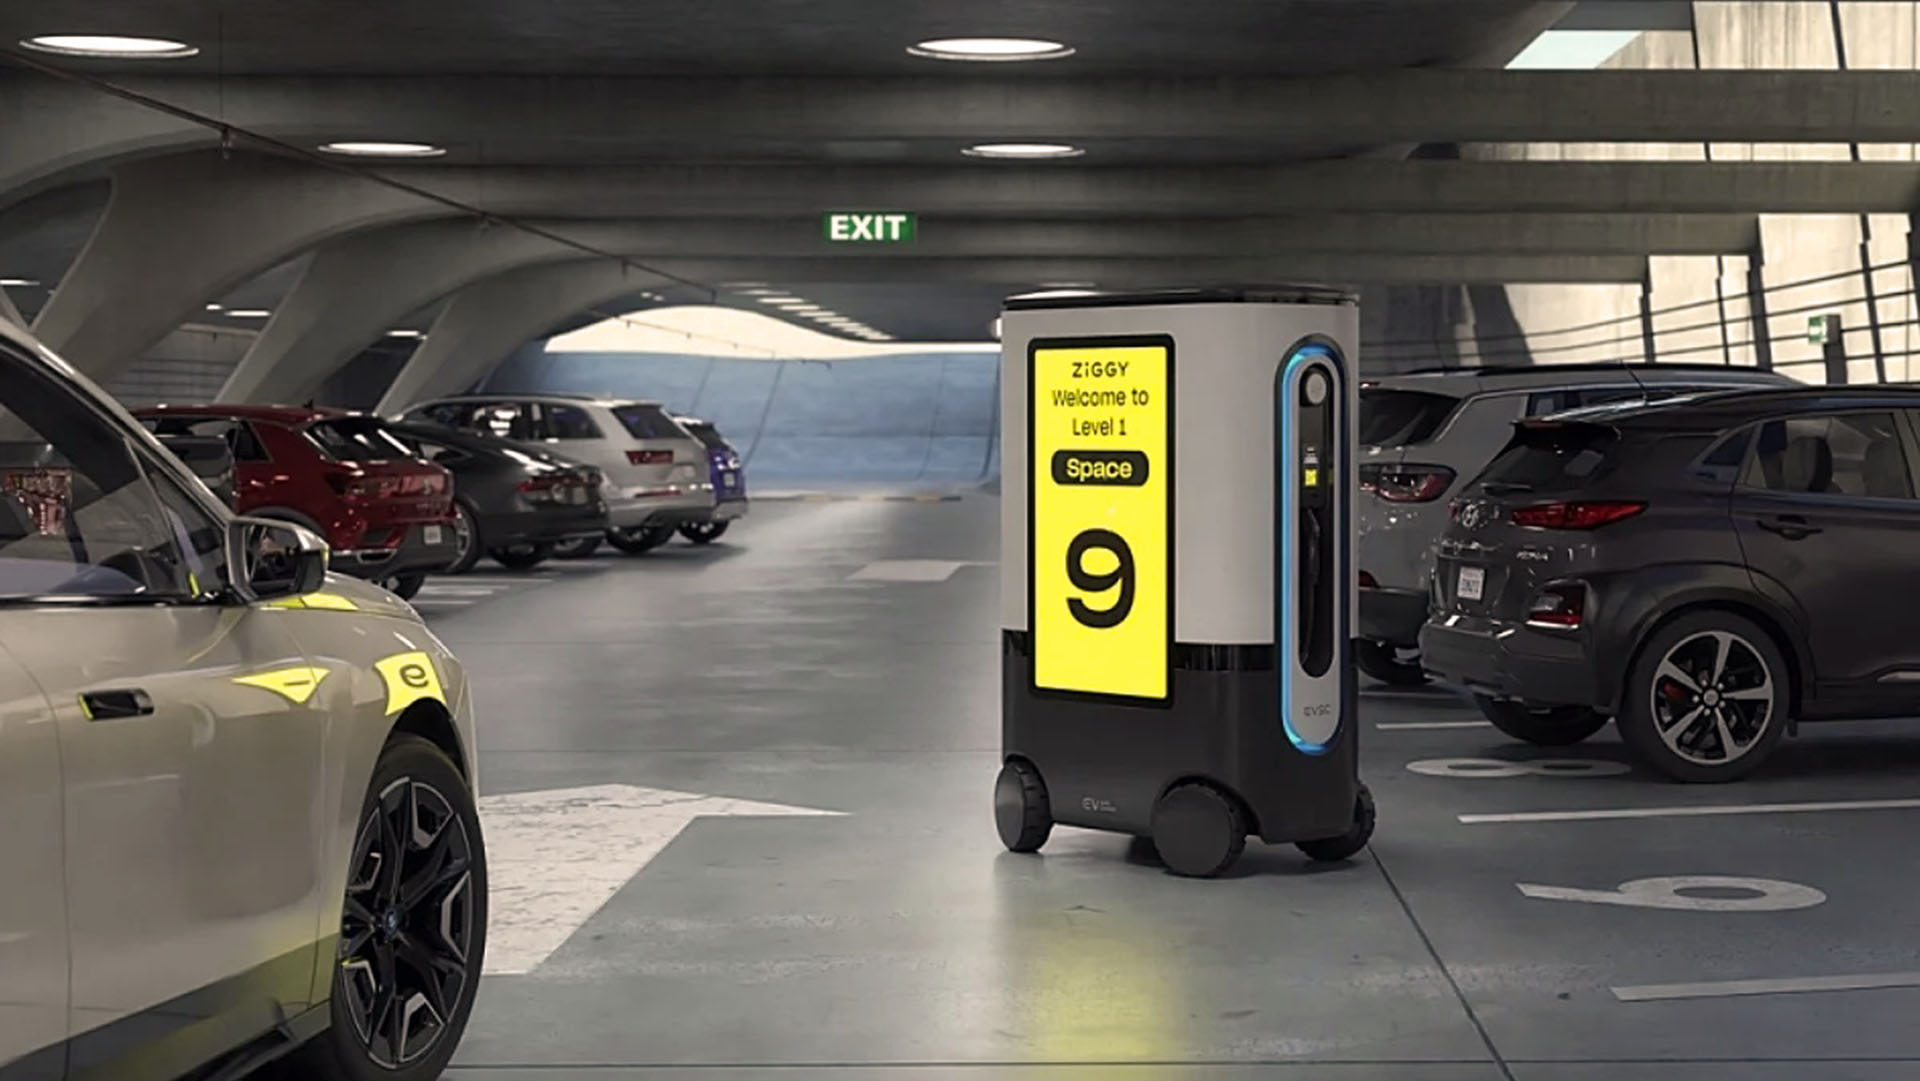 Cuando el usuario llega al sitio reservado, el robot se desplaza hacia atrás para permitir el estacionamiento y luego se acerca a la boca de carga